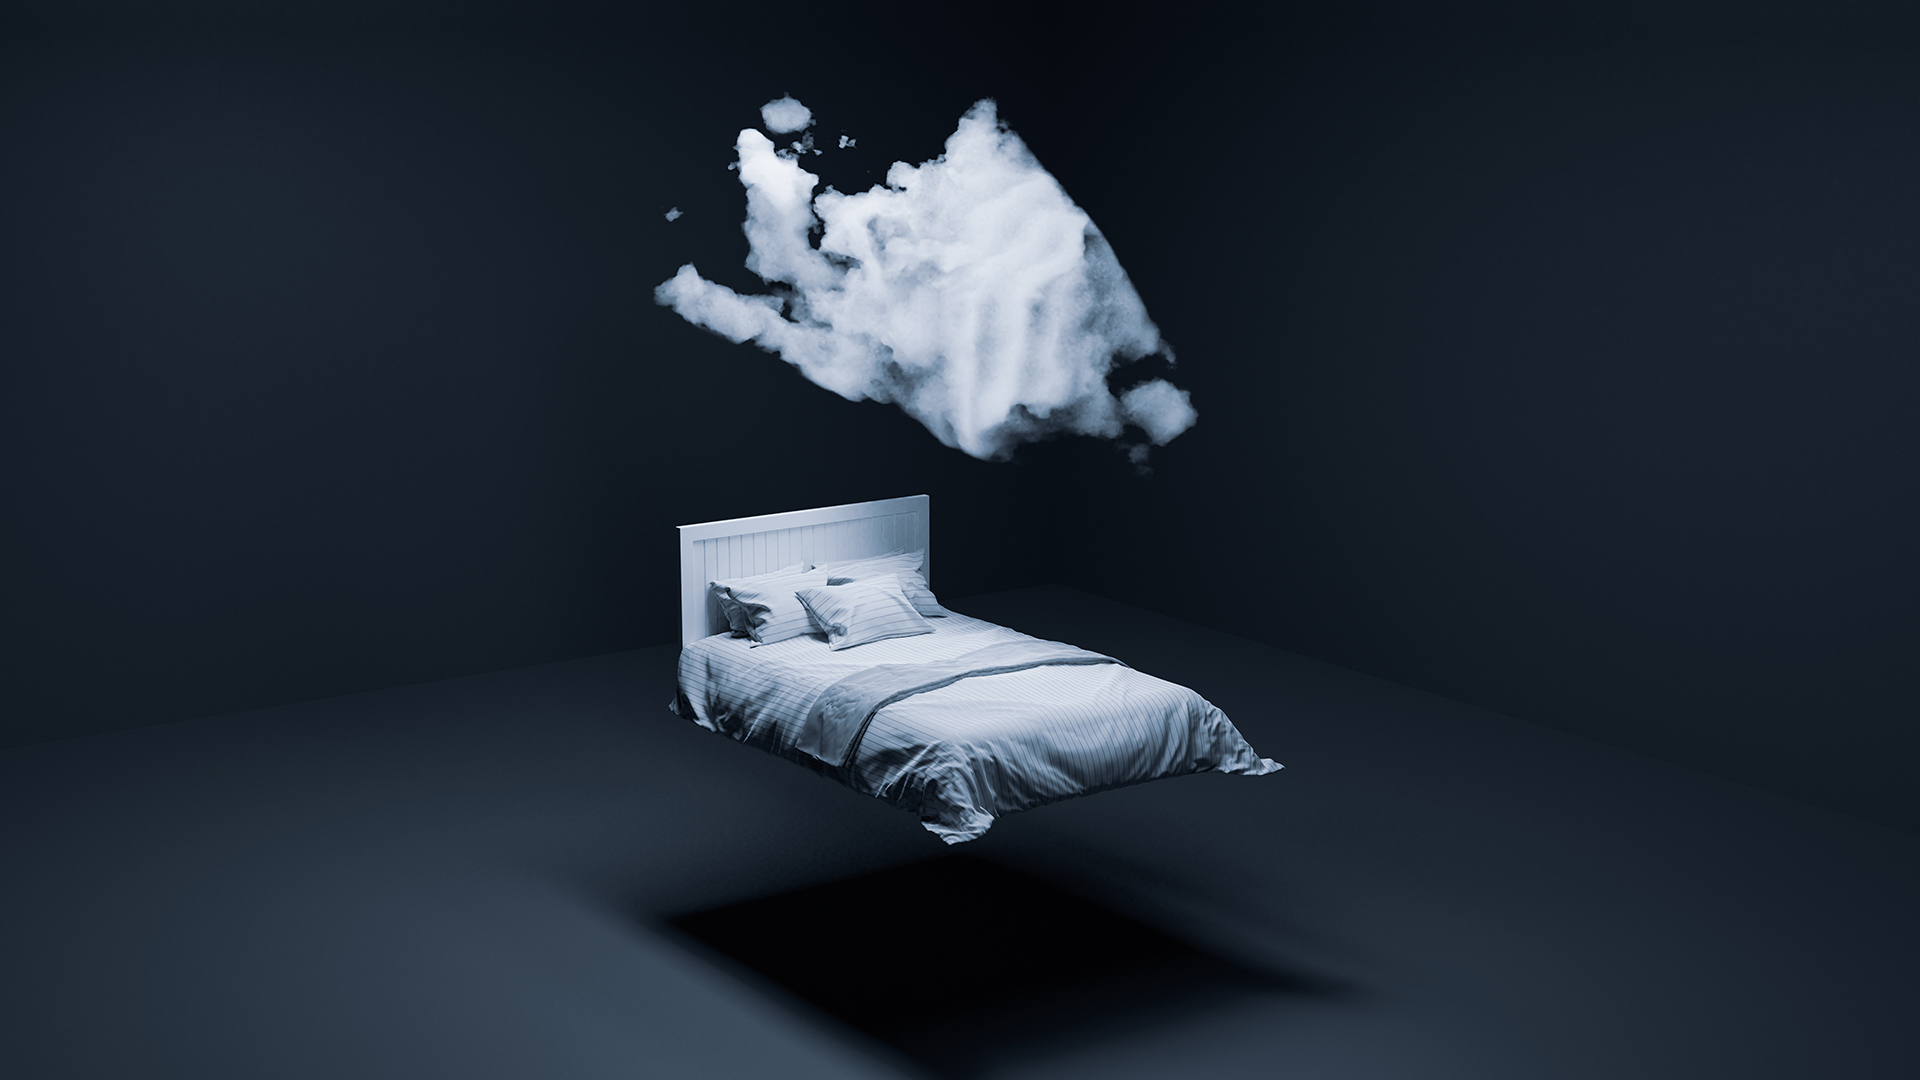 Debido a que la demencia en sí misma generalmente interrumpe el sueño de las personas, todavía hay dudas sobre si la falta de sueño causó la enfermedad en primer lugar o si es simplemente un síntoma de ella
(Getty Images)